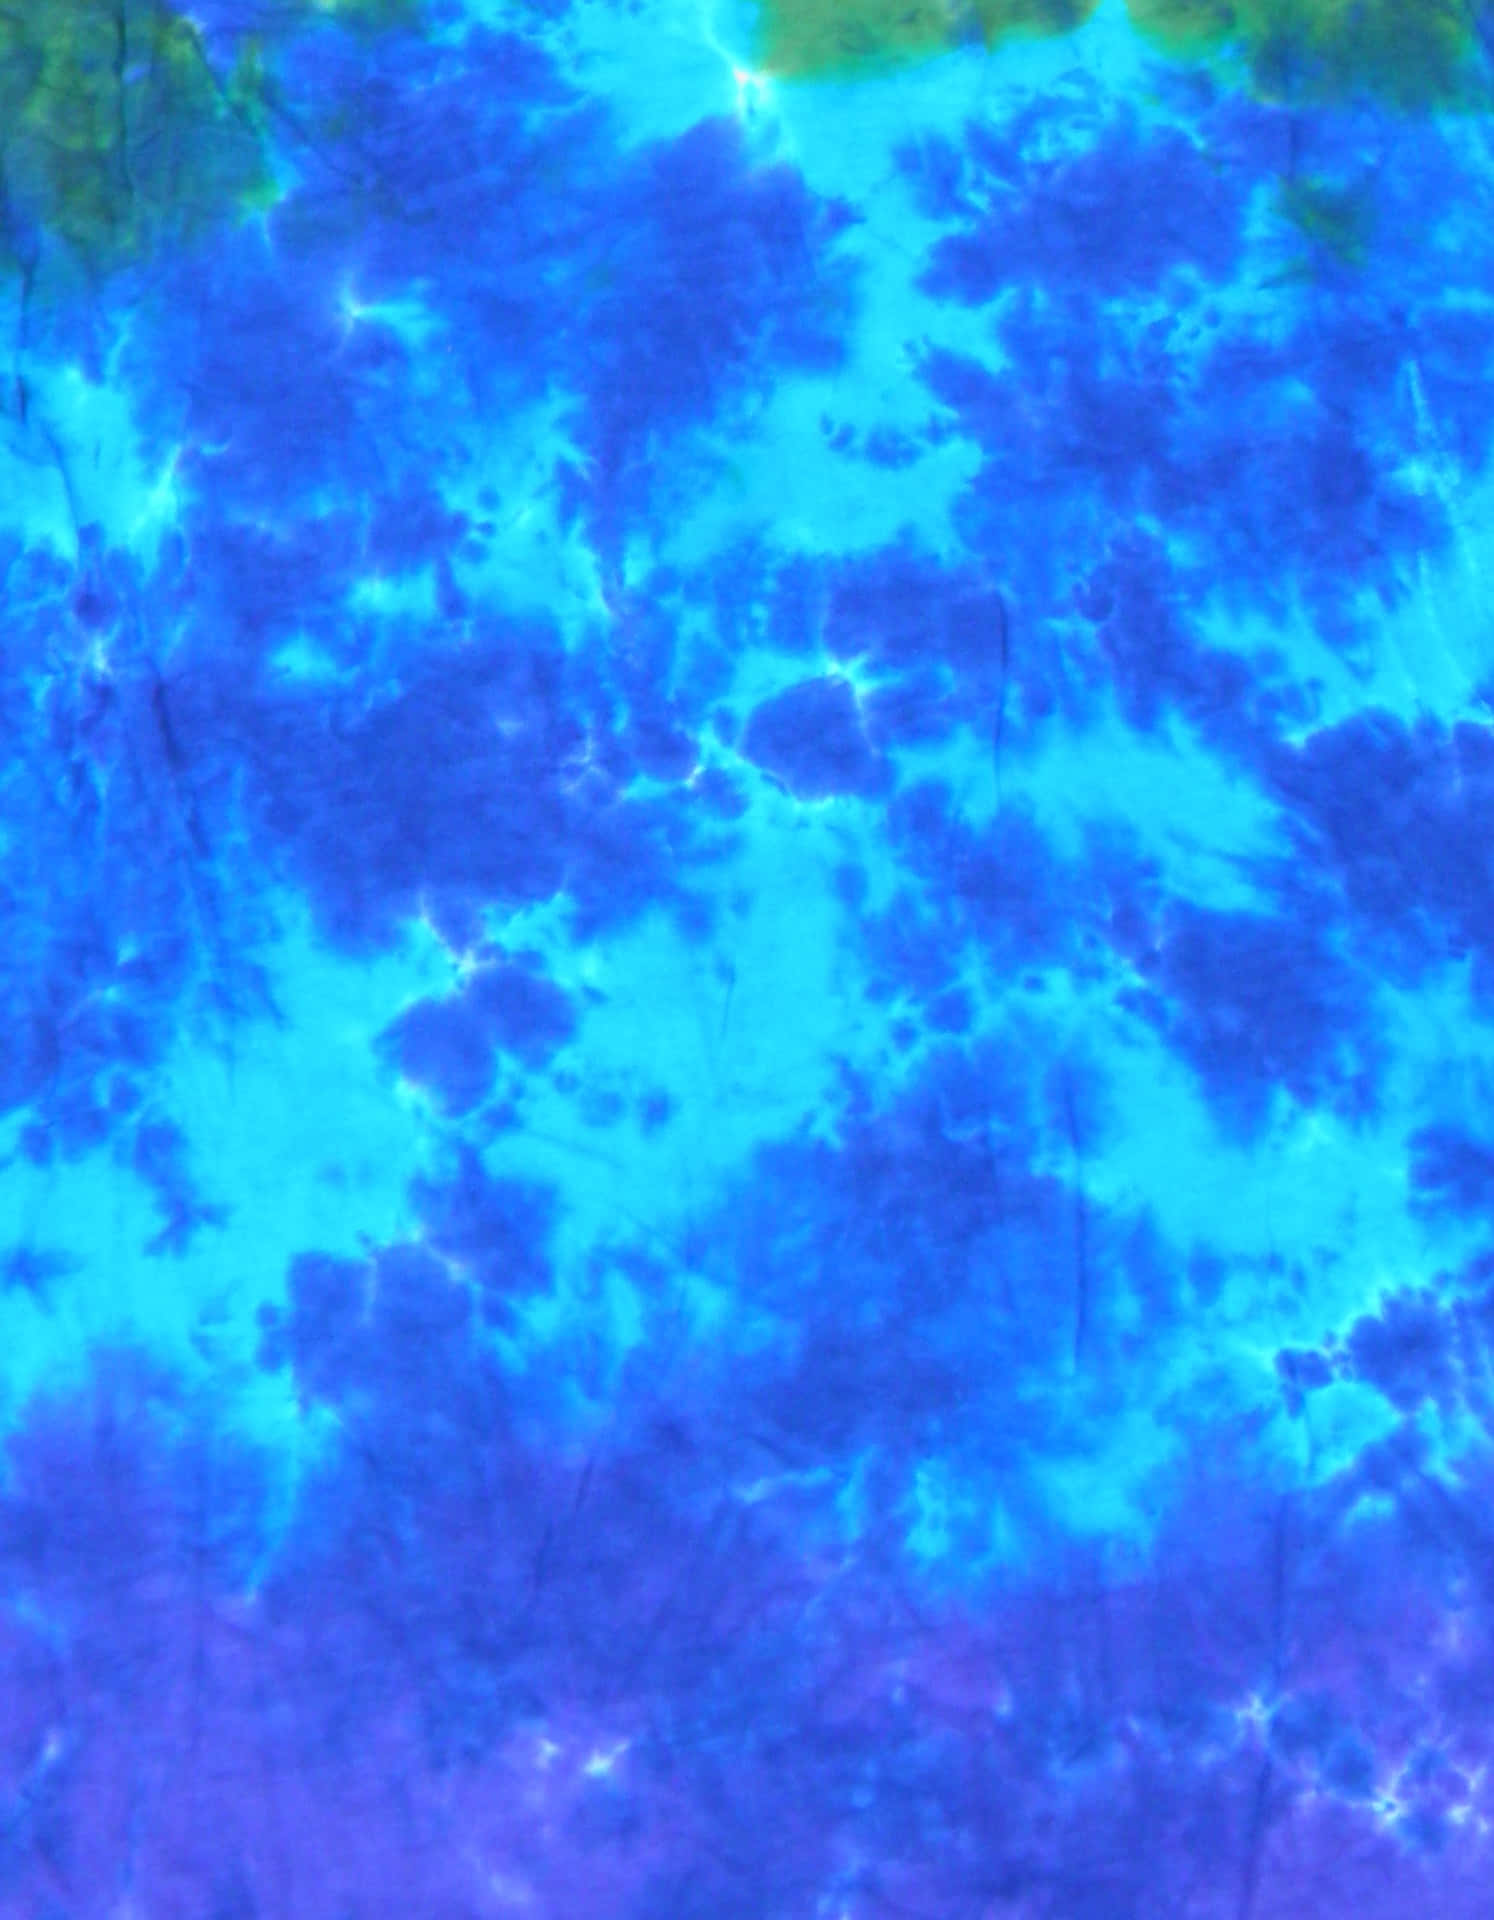 Gelite Färg Med Ett Färgstarkt Blått Tie Dye-mönster På Dator- Eller Mobilskärmen. Wallpaper